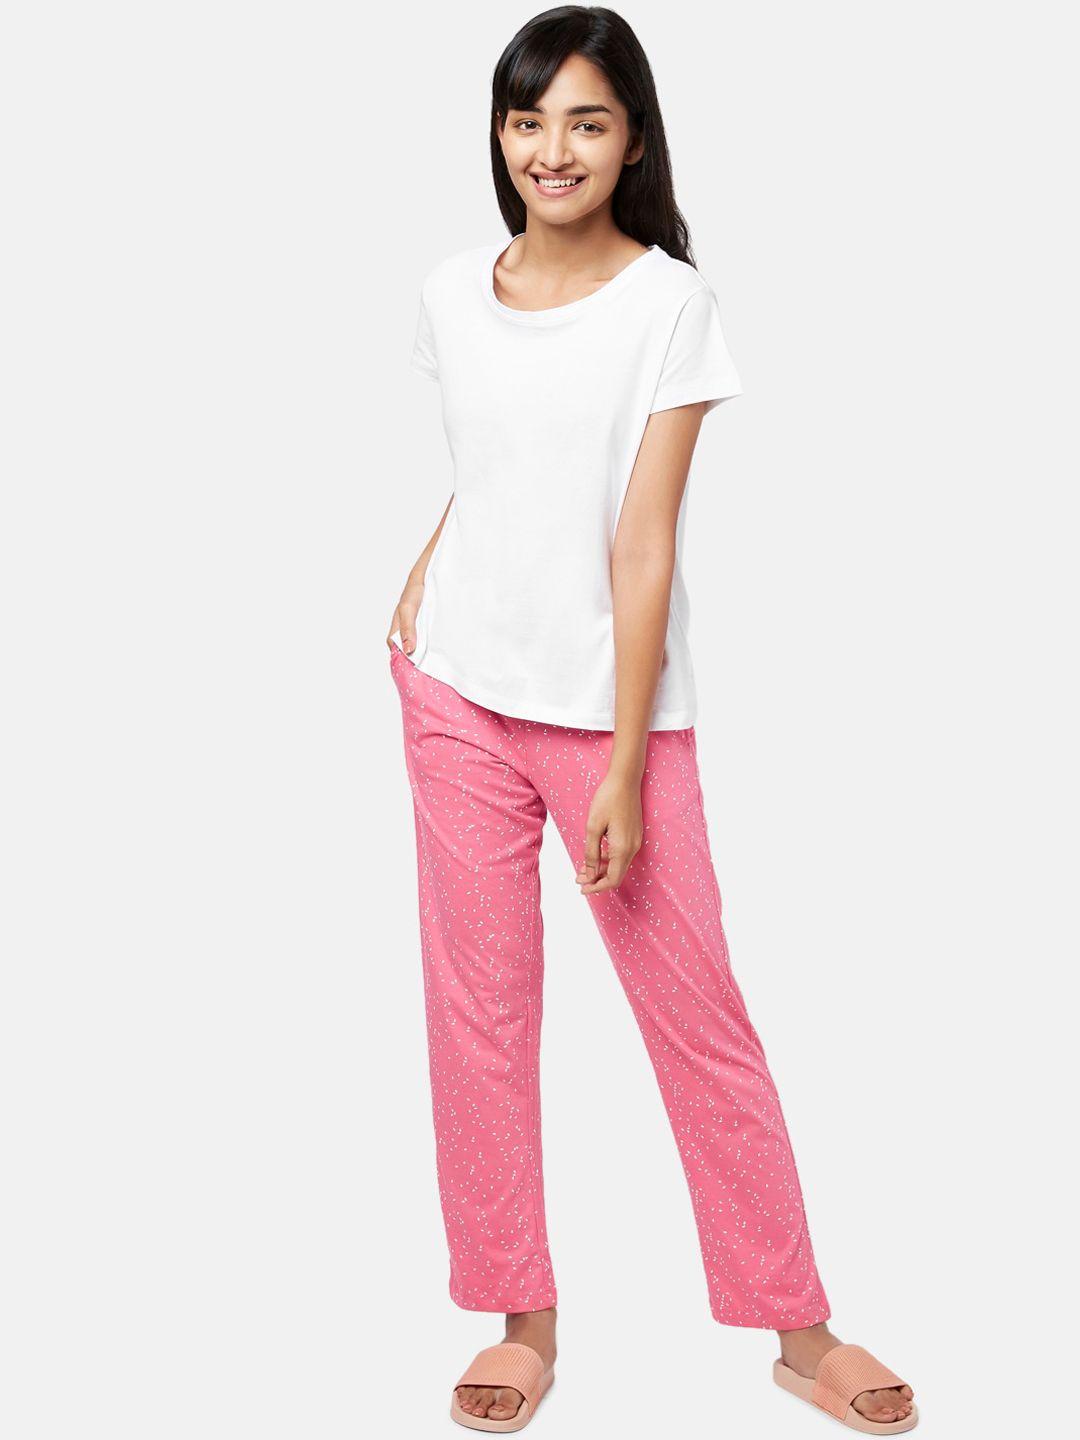 yu by pantaloons women white & pink printed night suit